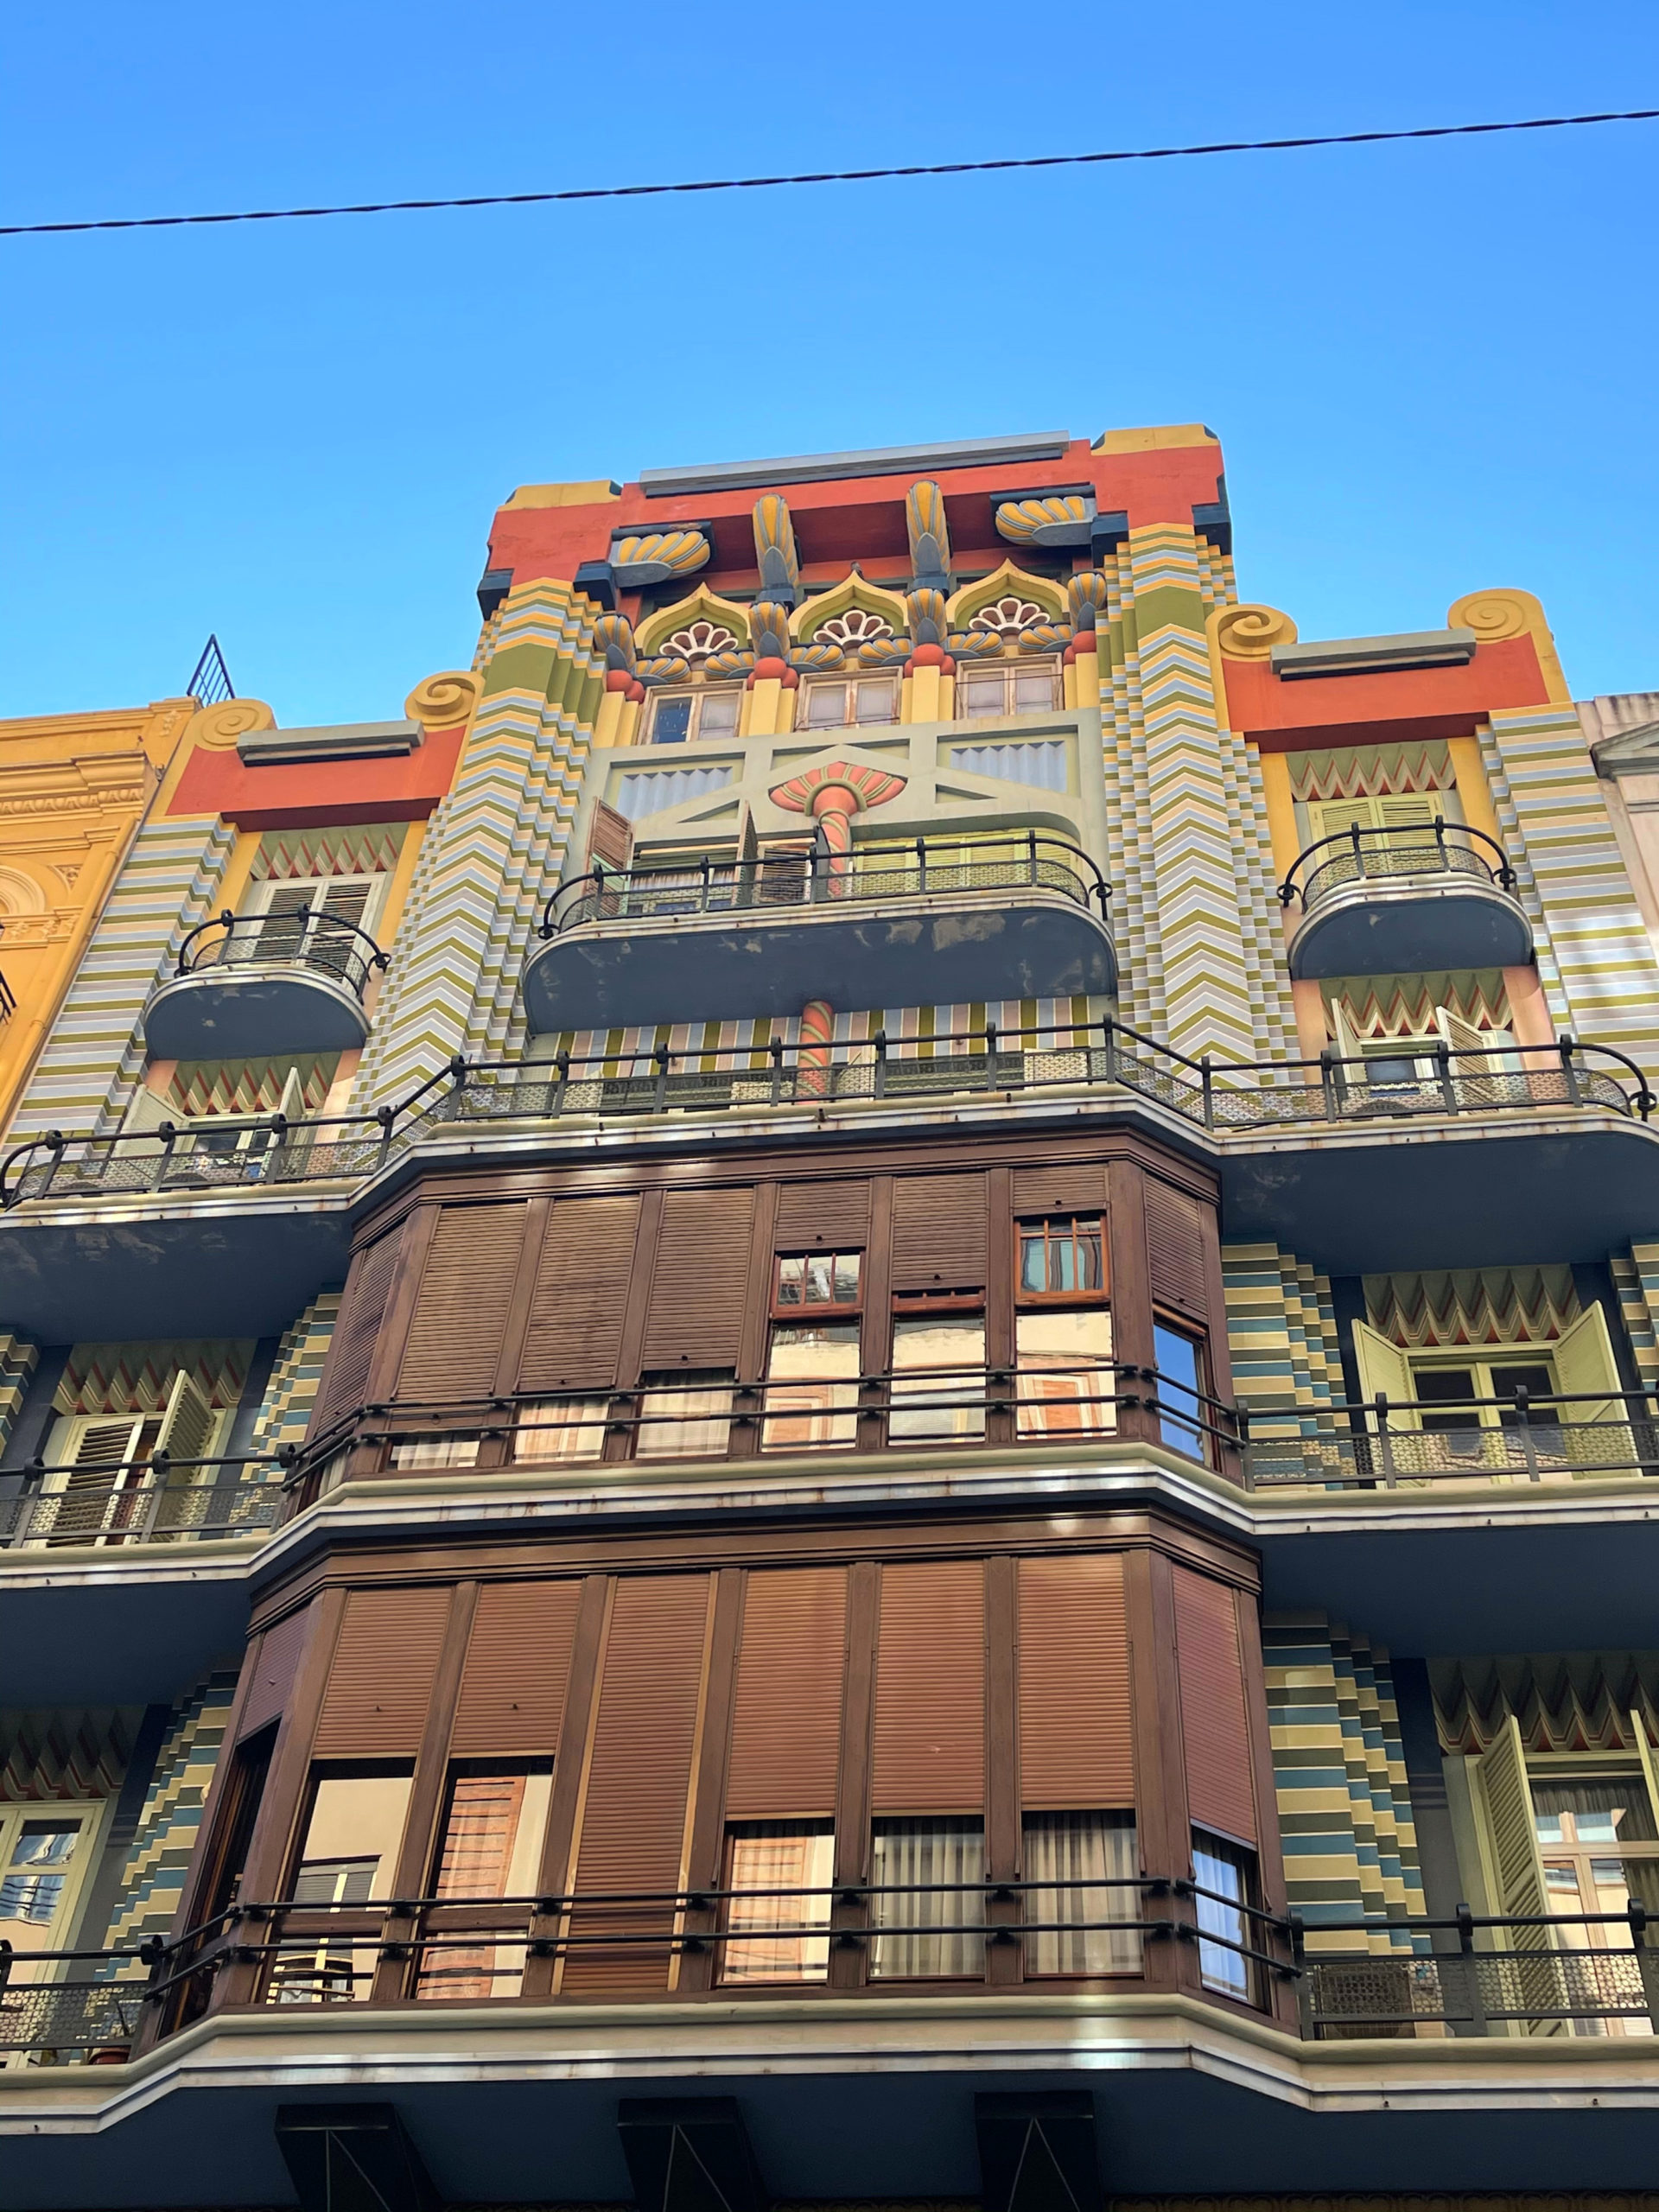 colourful architecture in valencia